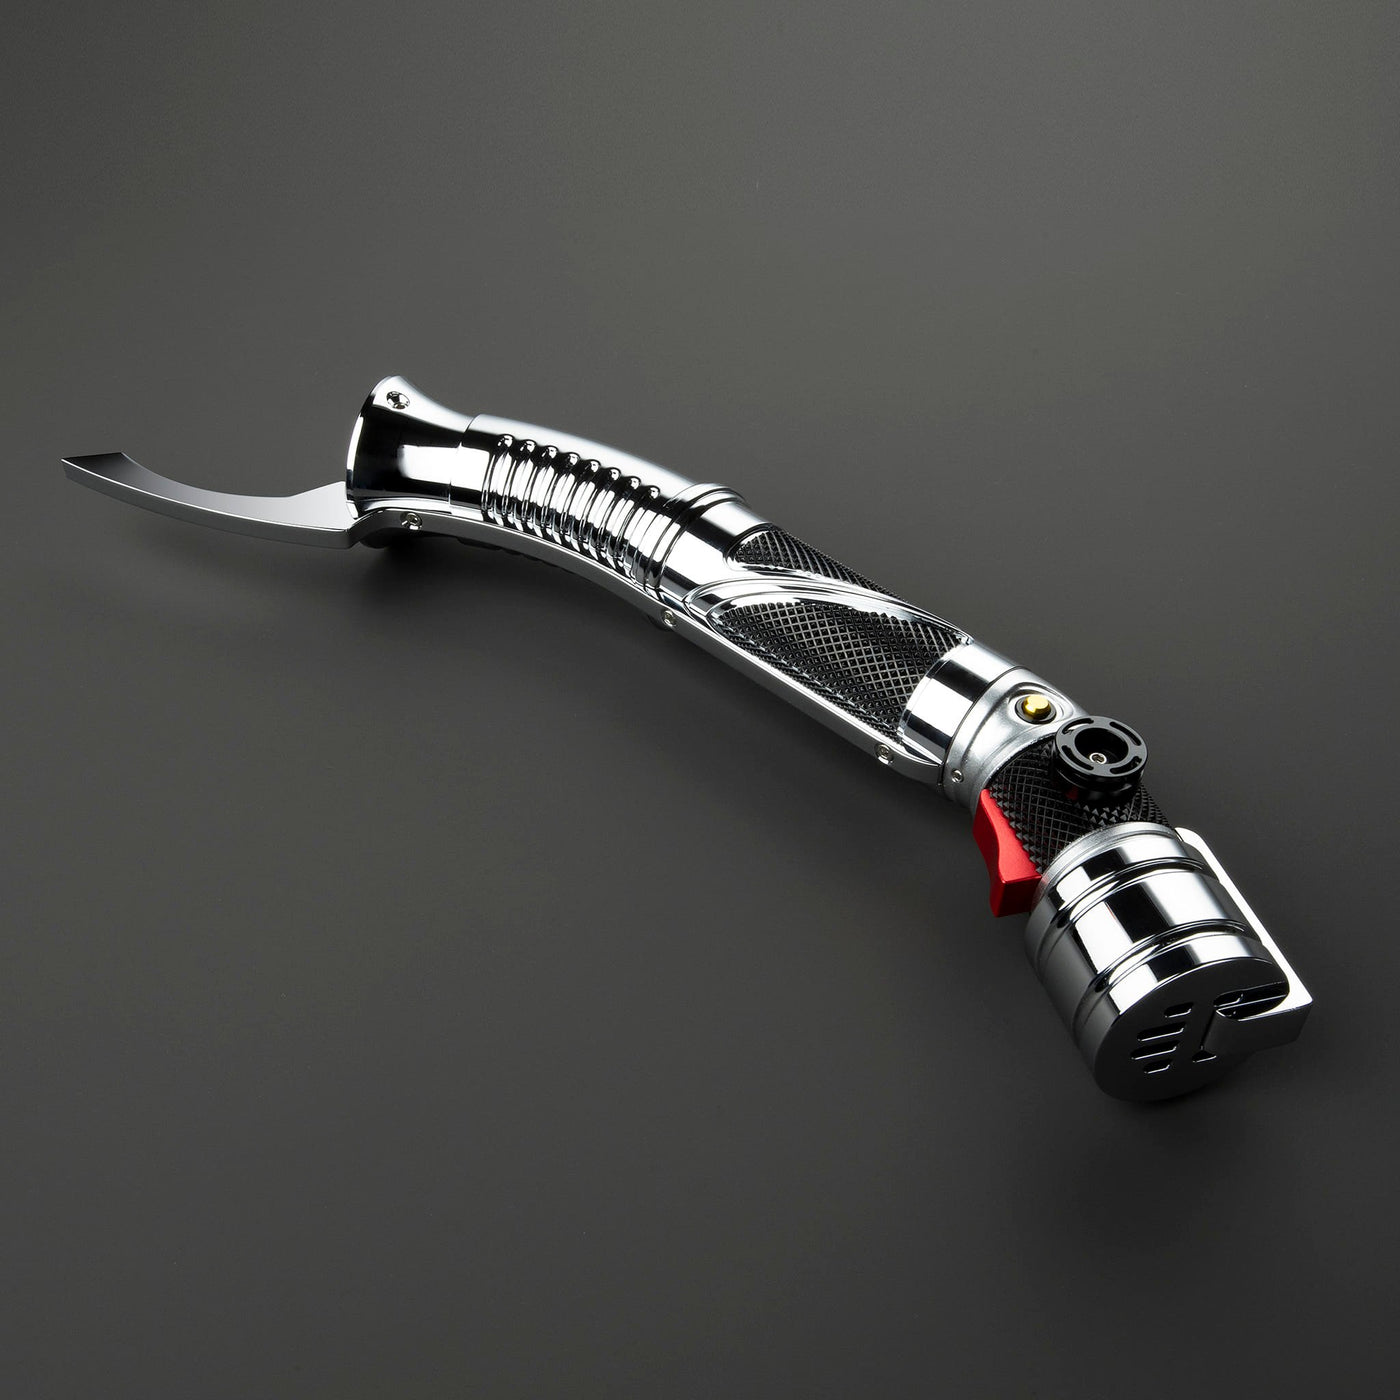 Counts Curve (Pre-Order) - KenJo Sabers - Star Wars Lightsaber replica Jedi Sith - Best sabershop Europe - Nederland light sabers kopen -